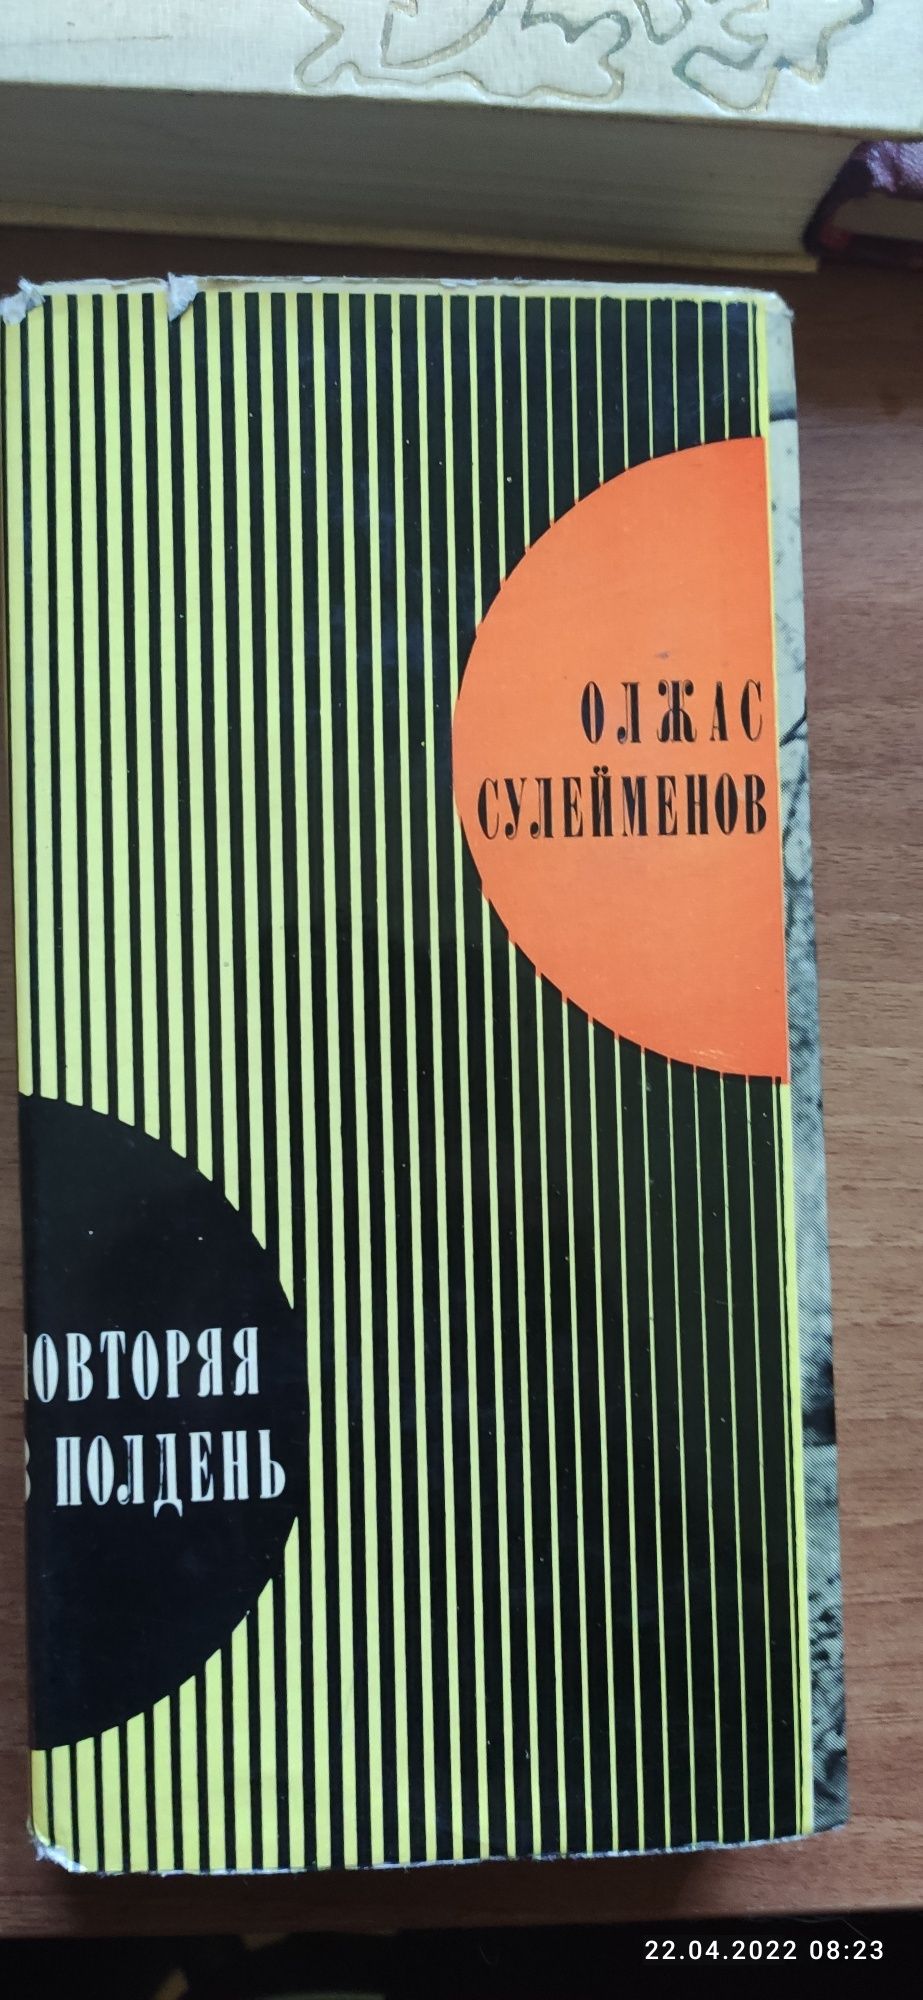 Книги советских времён